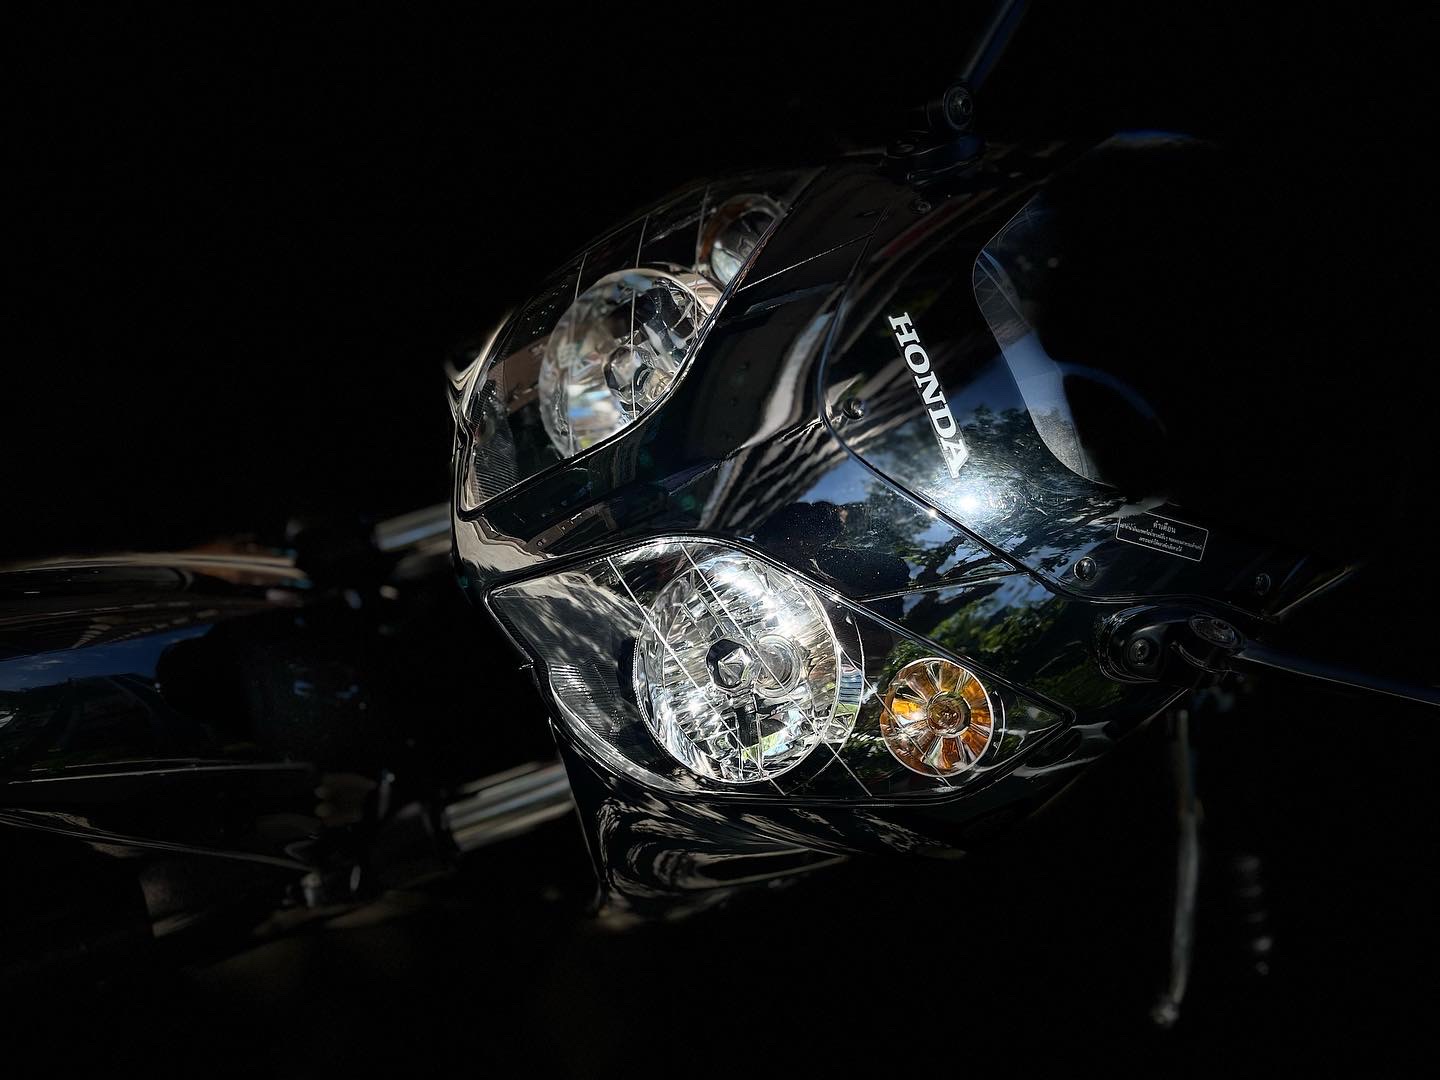 【小資族二手重機買賣】HONDA CBR150R - 「Webike-摩托車市」